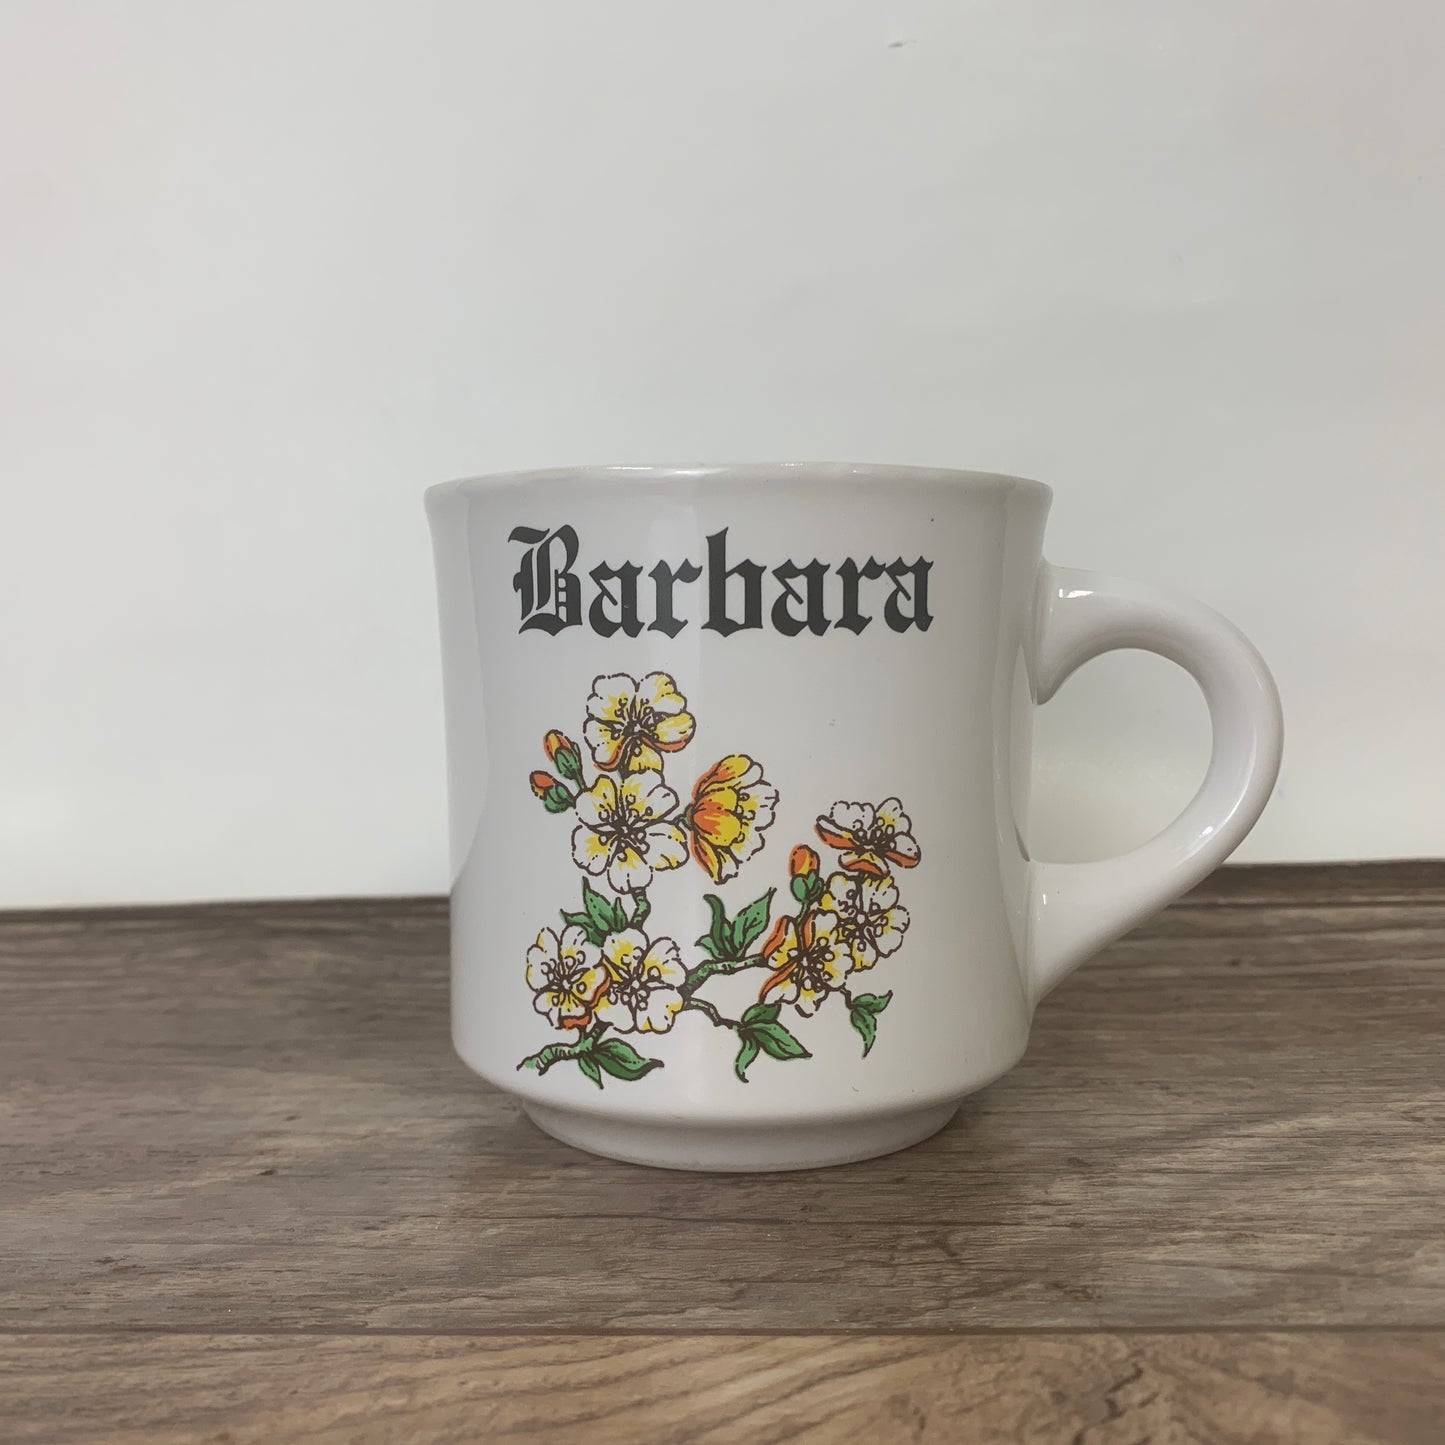 Vintage Papel Name Mug, Gift for Barbara, Coffee Mug with Name and White Flowers